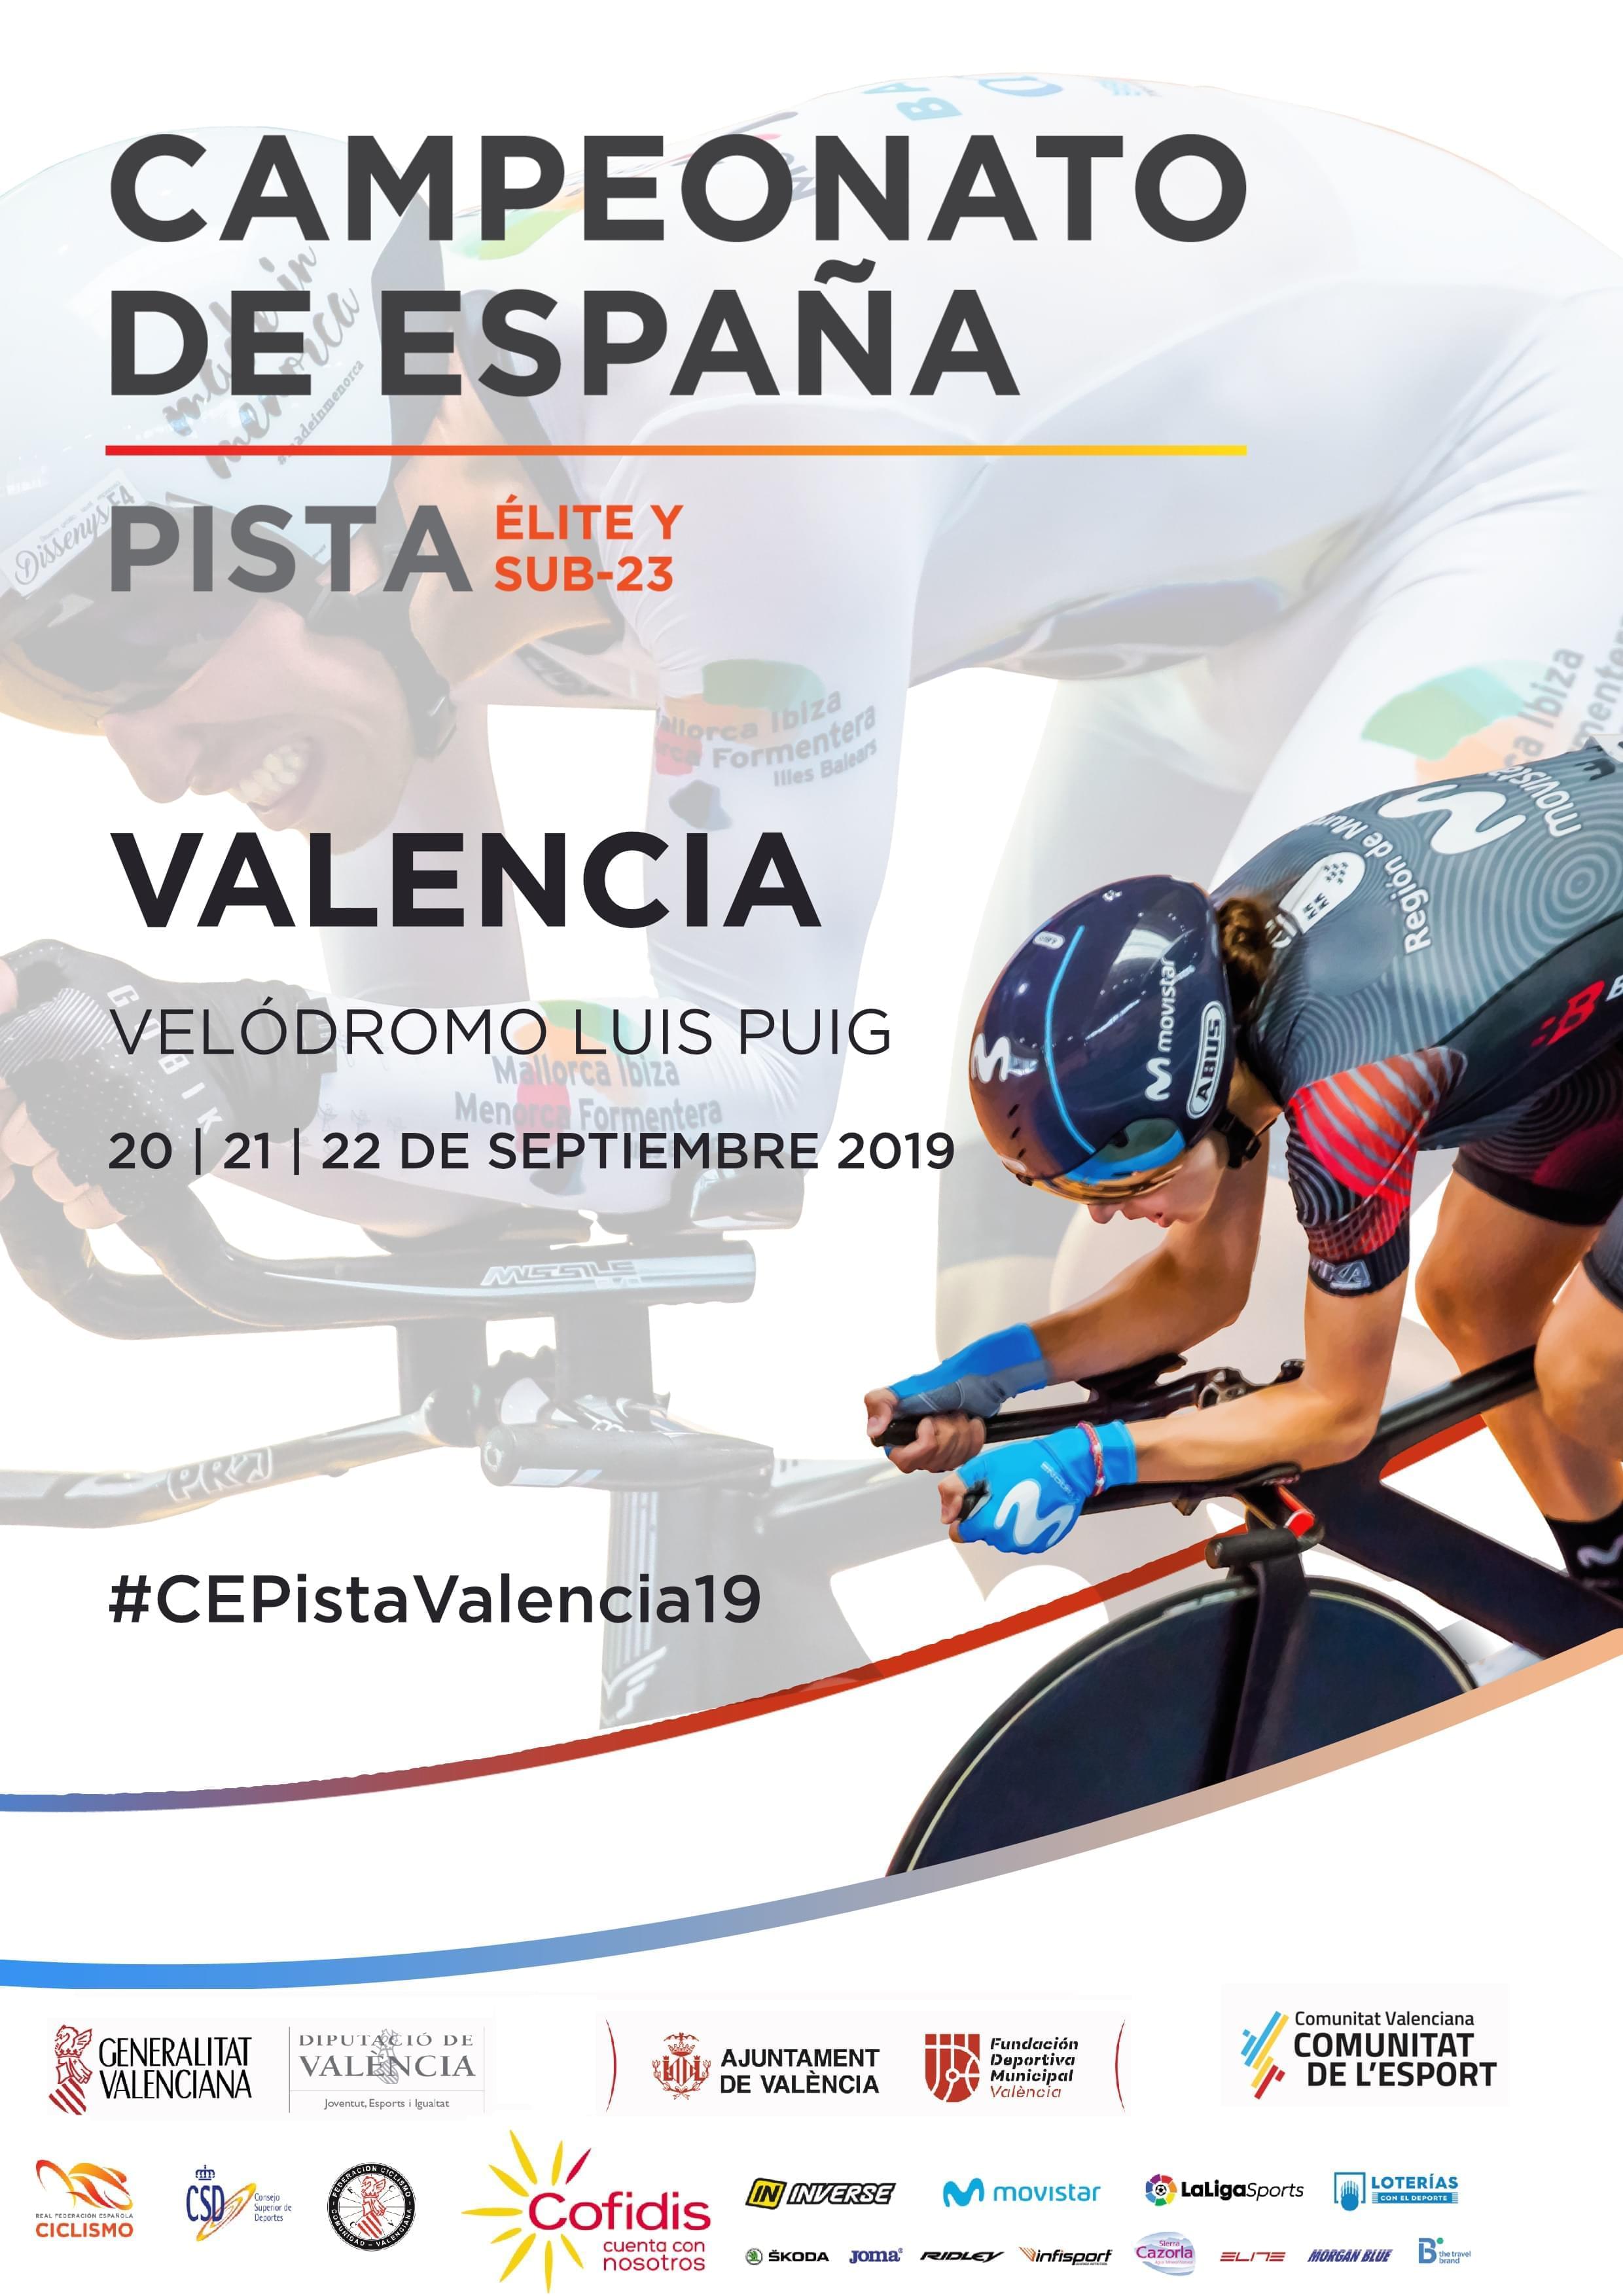 Cuatro madrileños en Valencia listos para los Campeonatos de España de pista elite  y sub 23